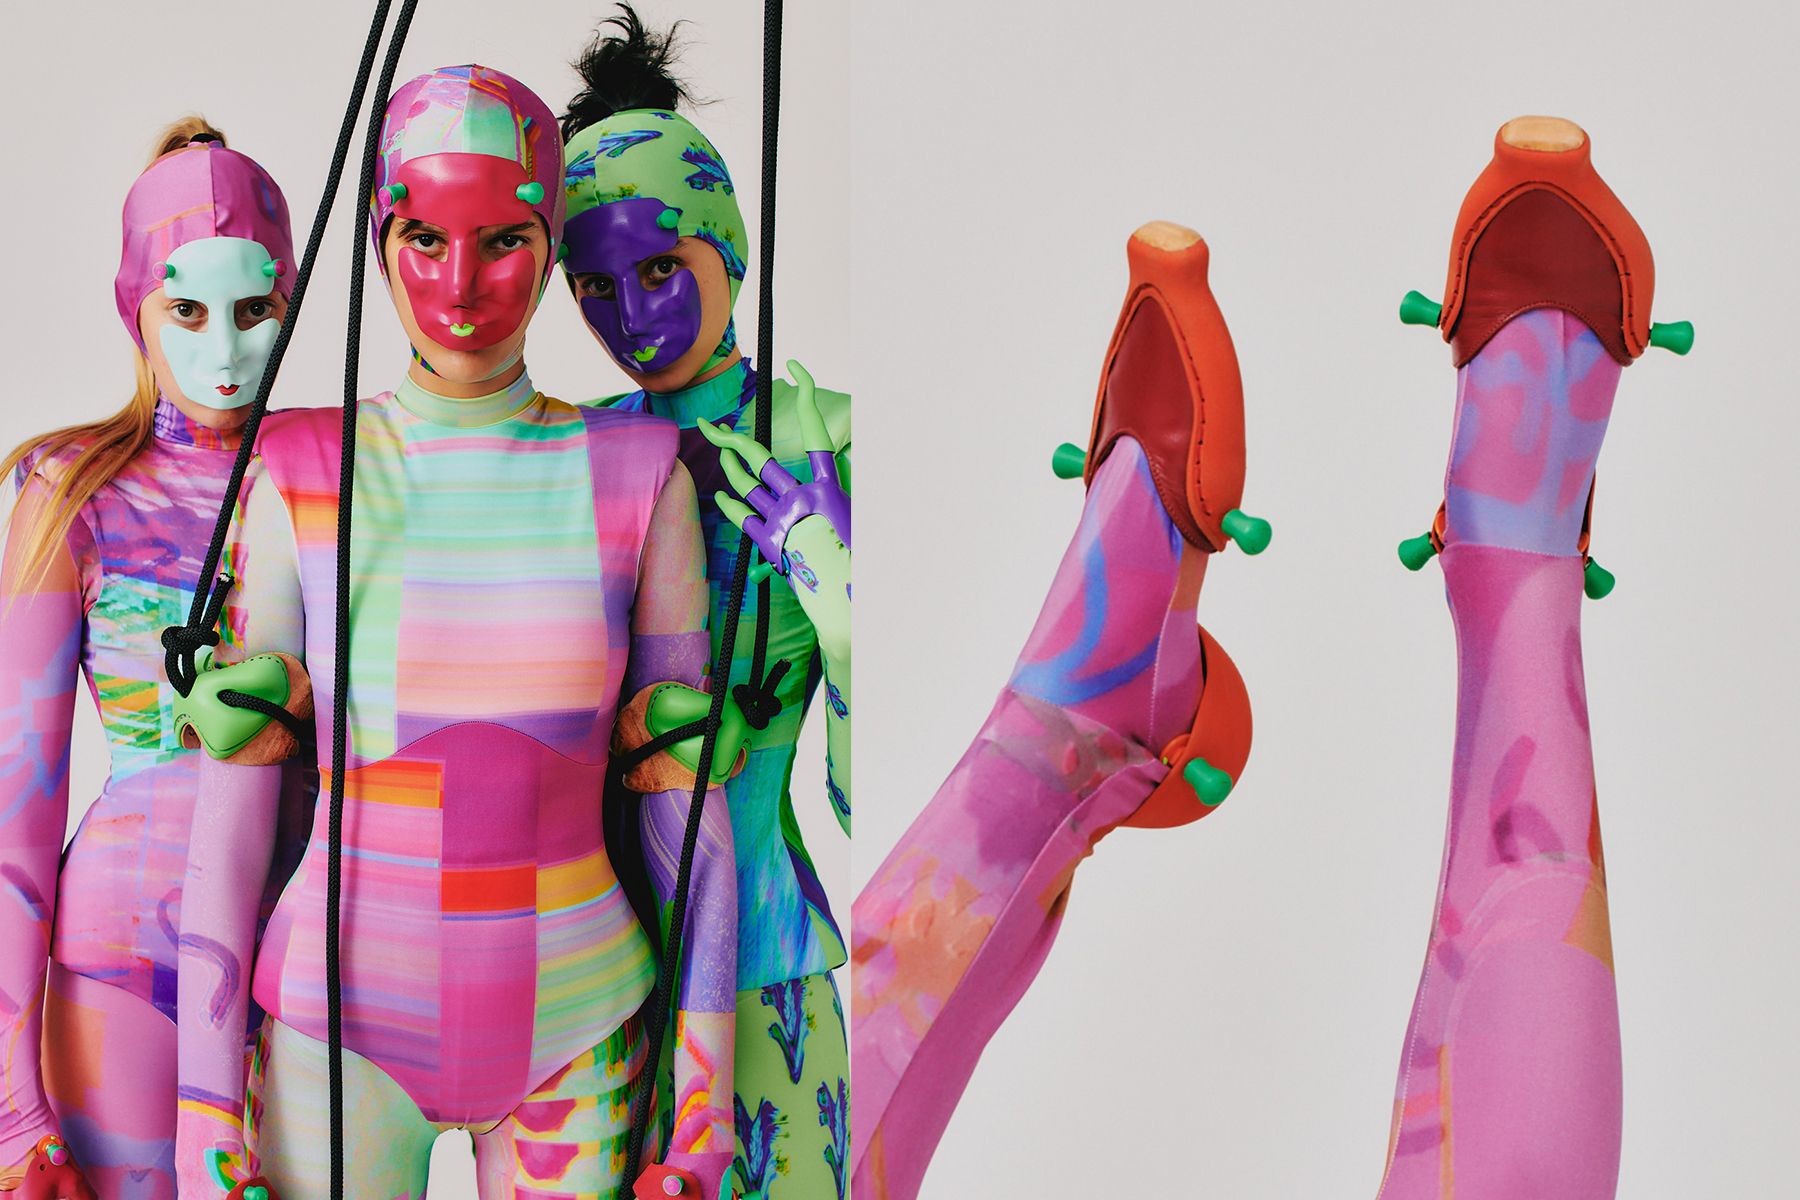 3 דוגמניות בלבוש צבעוני ומסכות, בובה אנושית, מאיה קפלן, פרויקט גמר, 2022